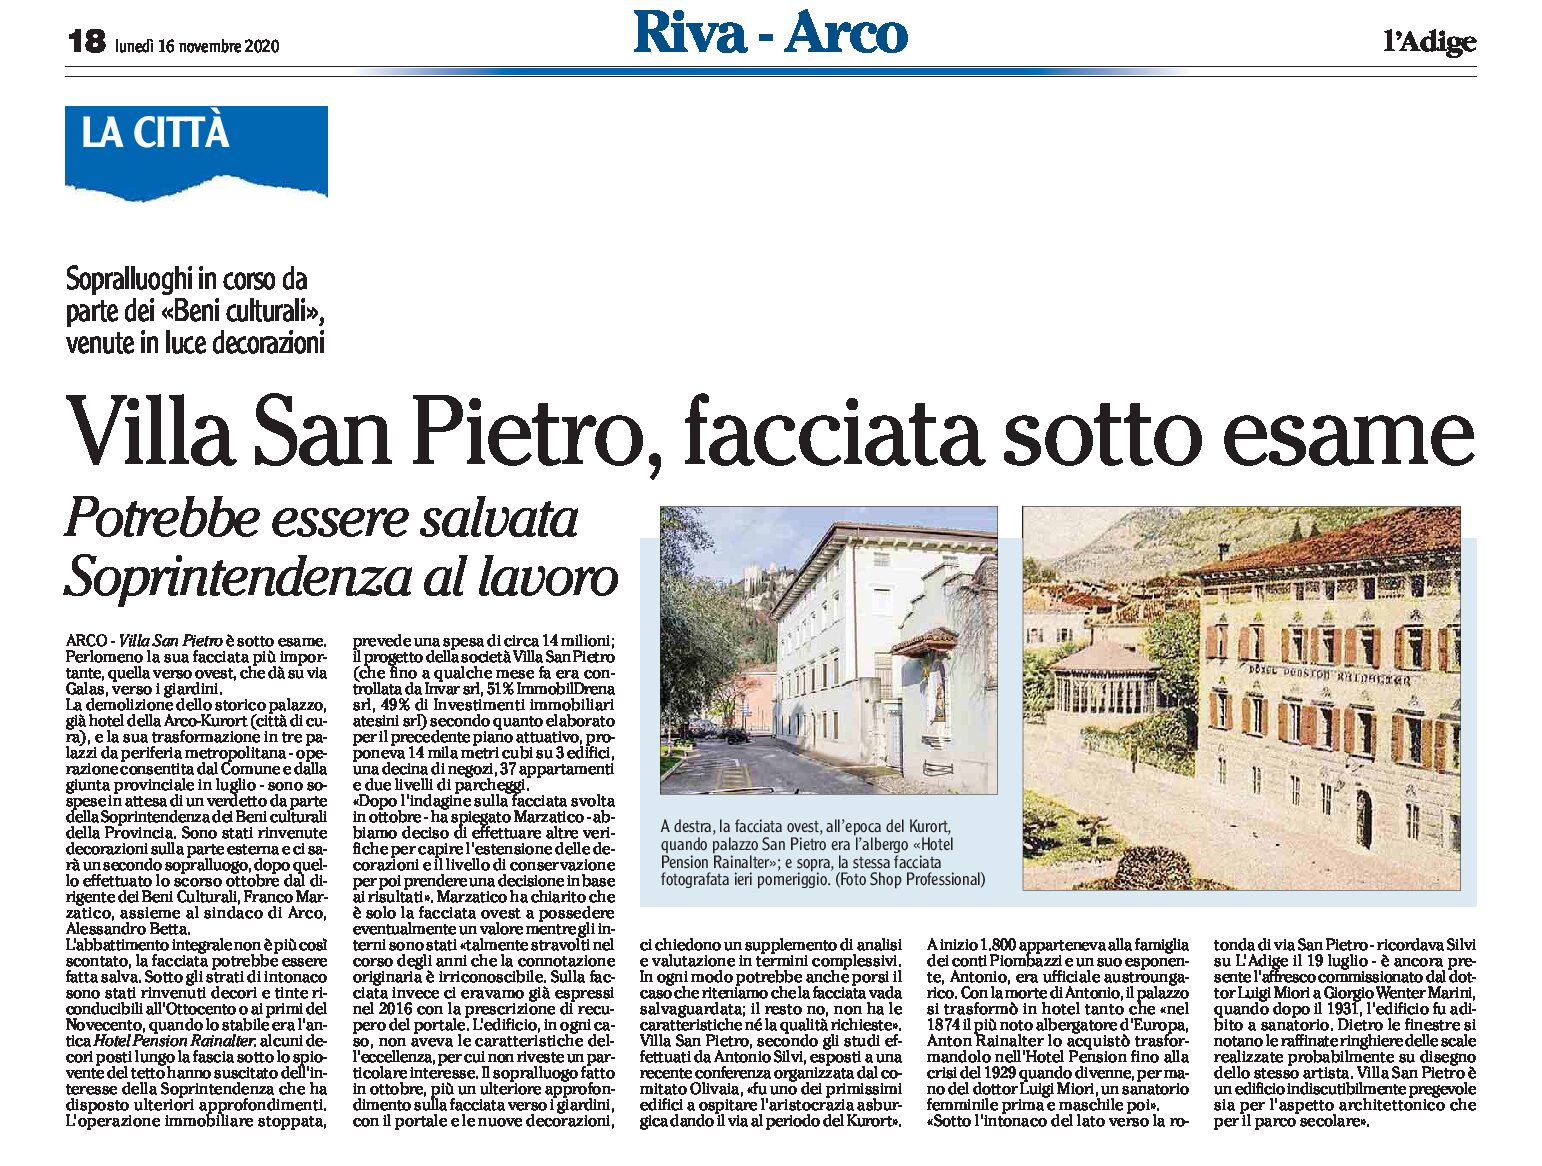 Arco, Villa San Pietro: facciata sotto esame, potrebbe essere salvata. Soprintendenza al lavoro